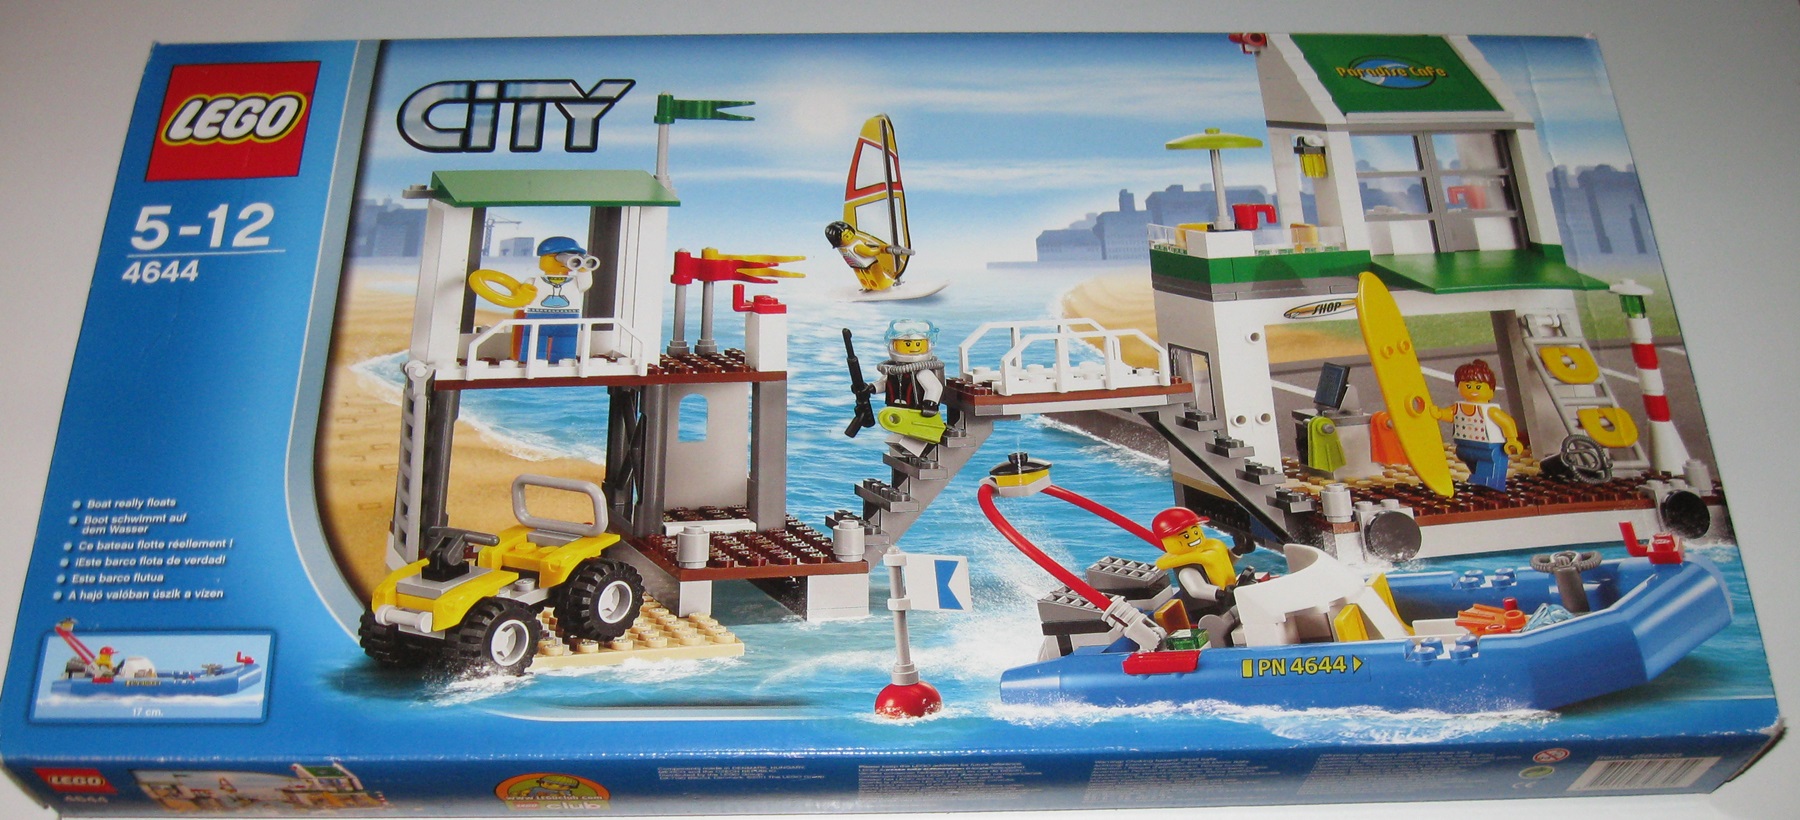 0010 Lego City 4644